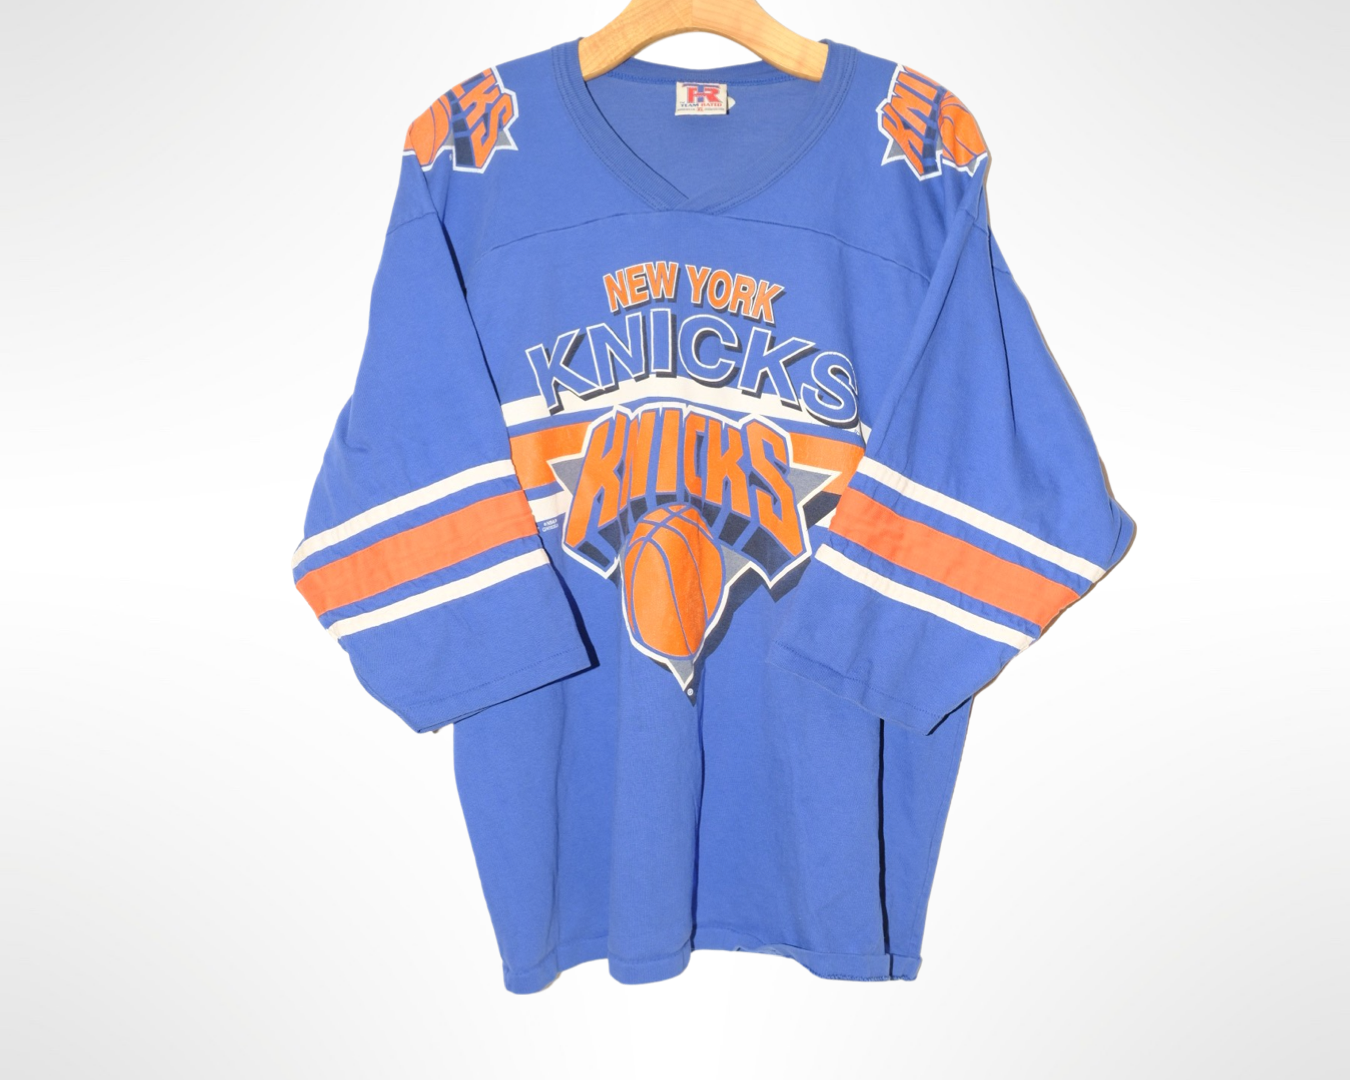 90s new york knicks cotton jersey style tee